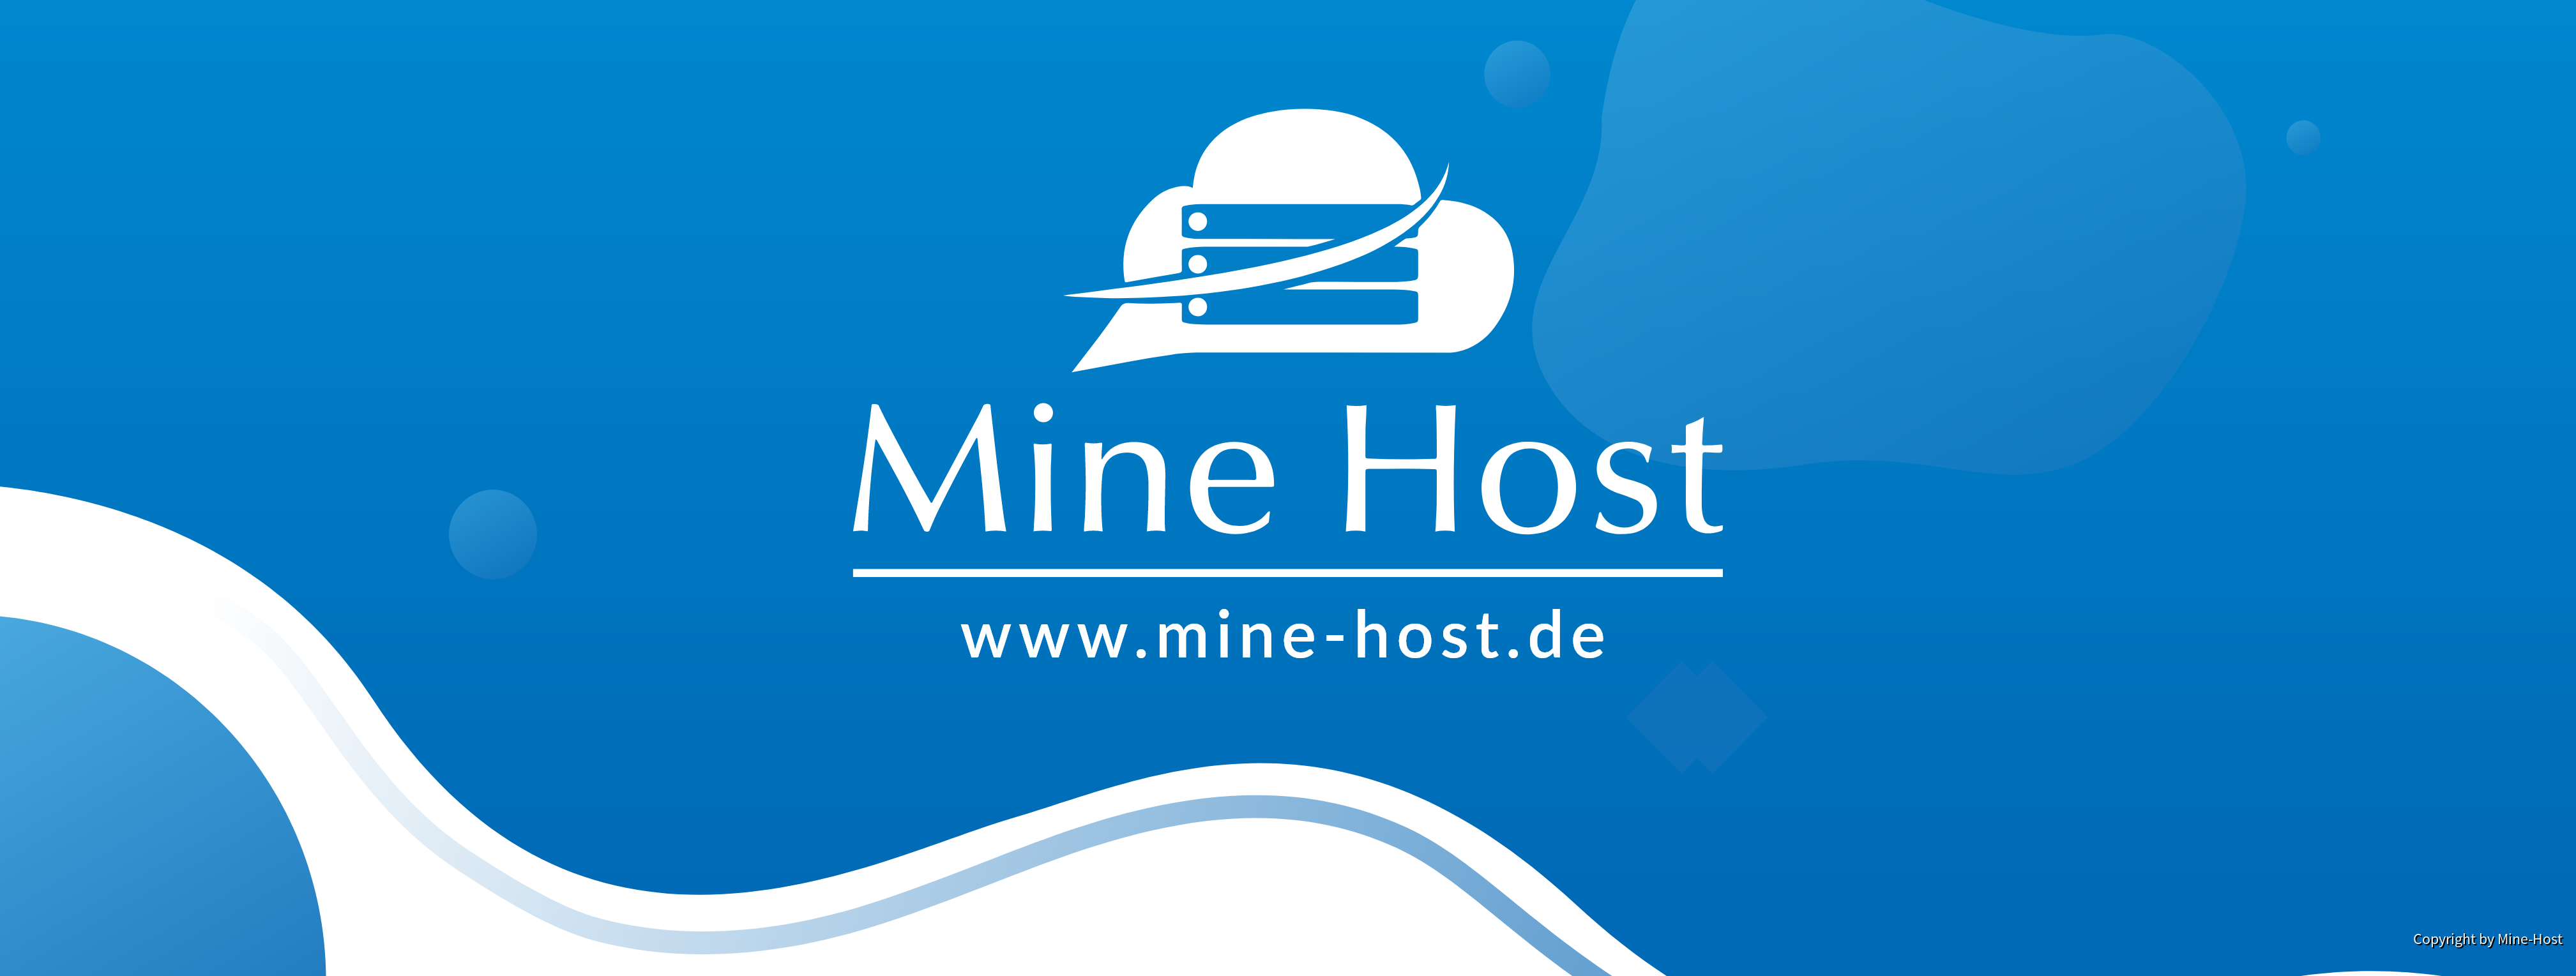 Mine-Host Social Banner